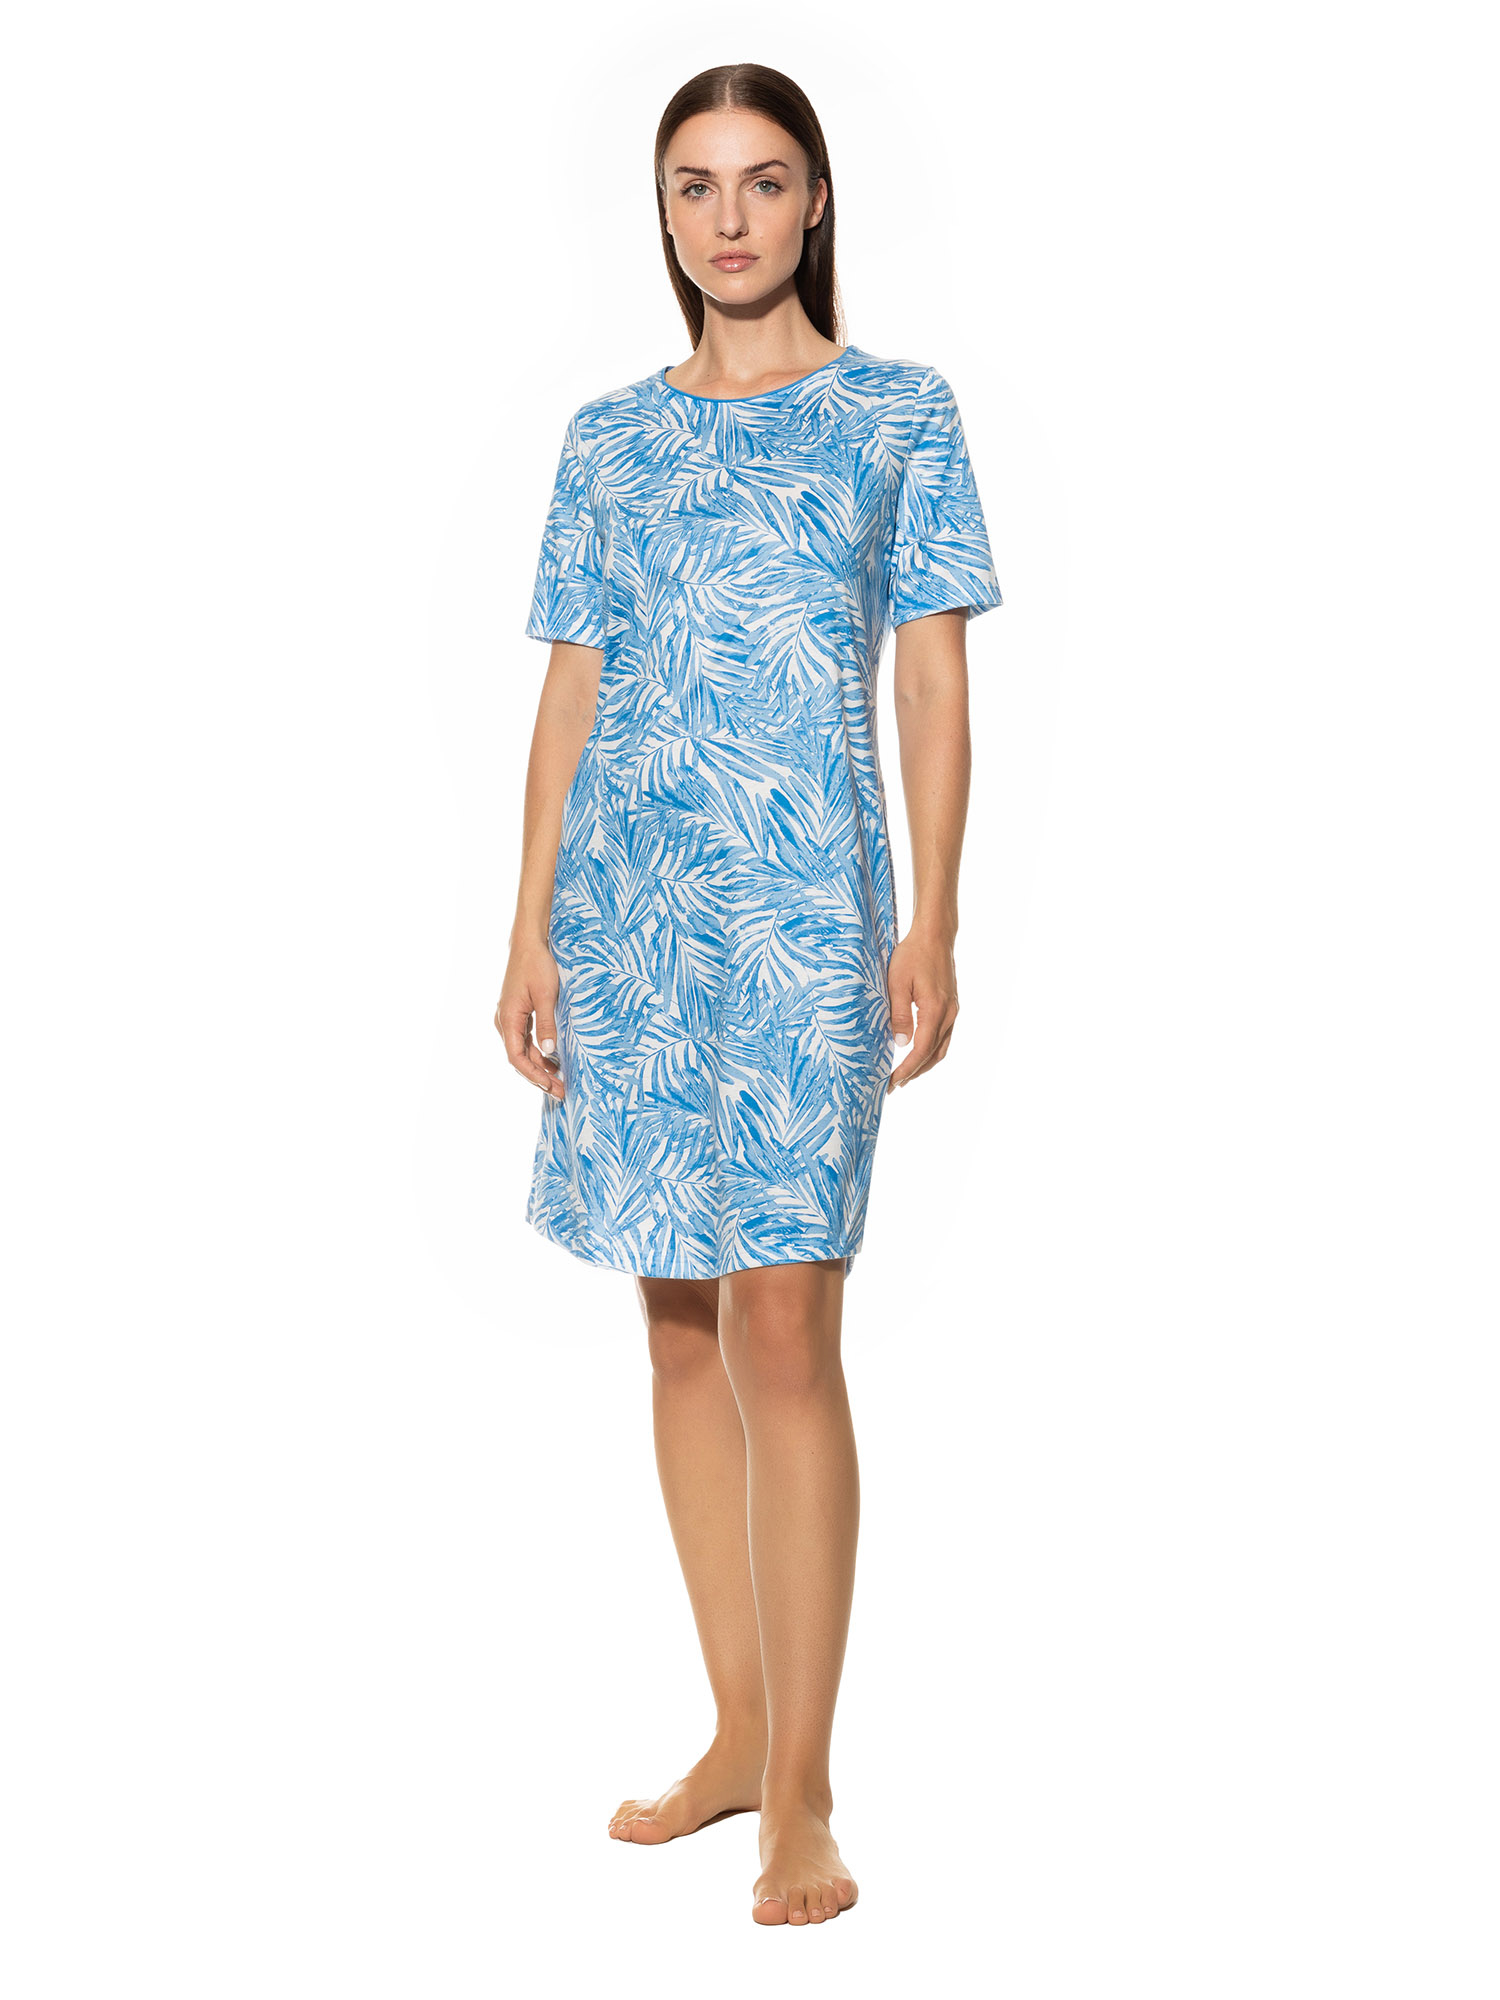 Damen-Nachthemd  mit Allover-Blätter-Print aus reinem Baumwoll-Jersey